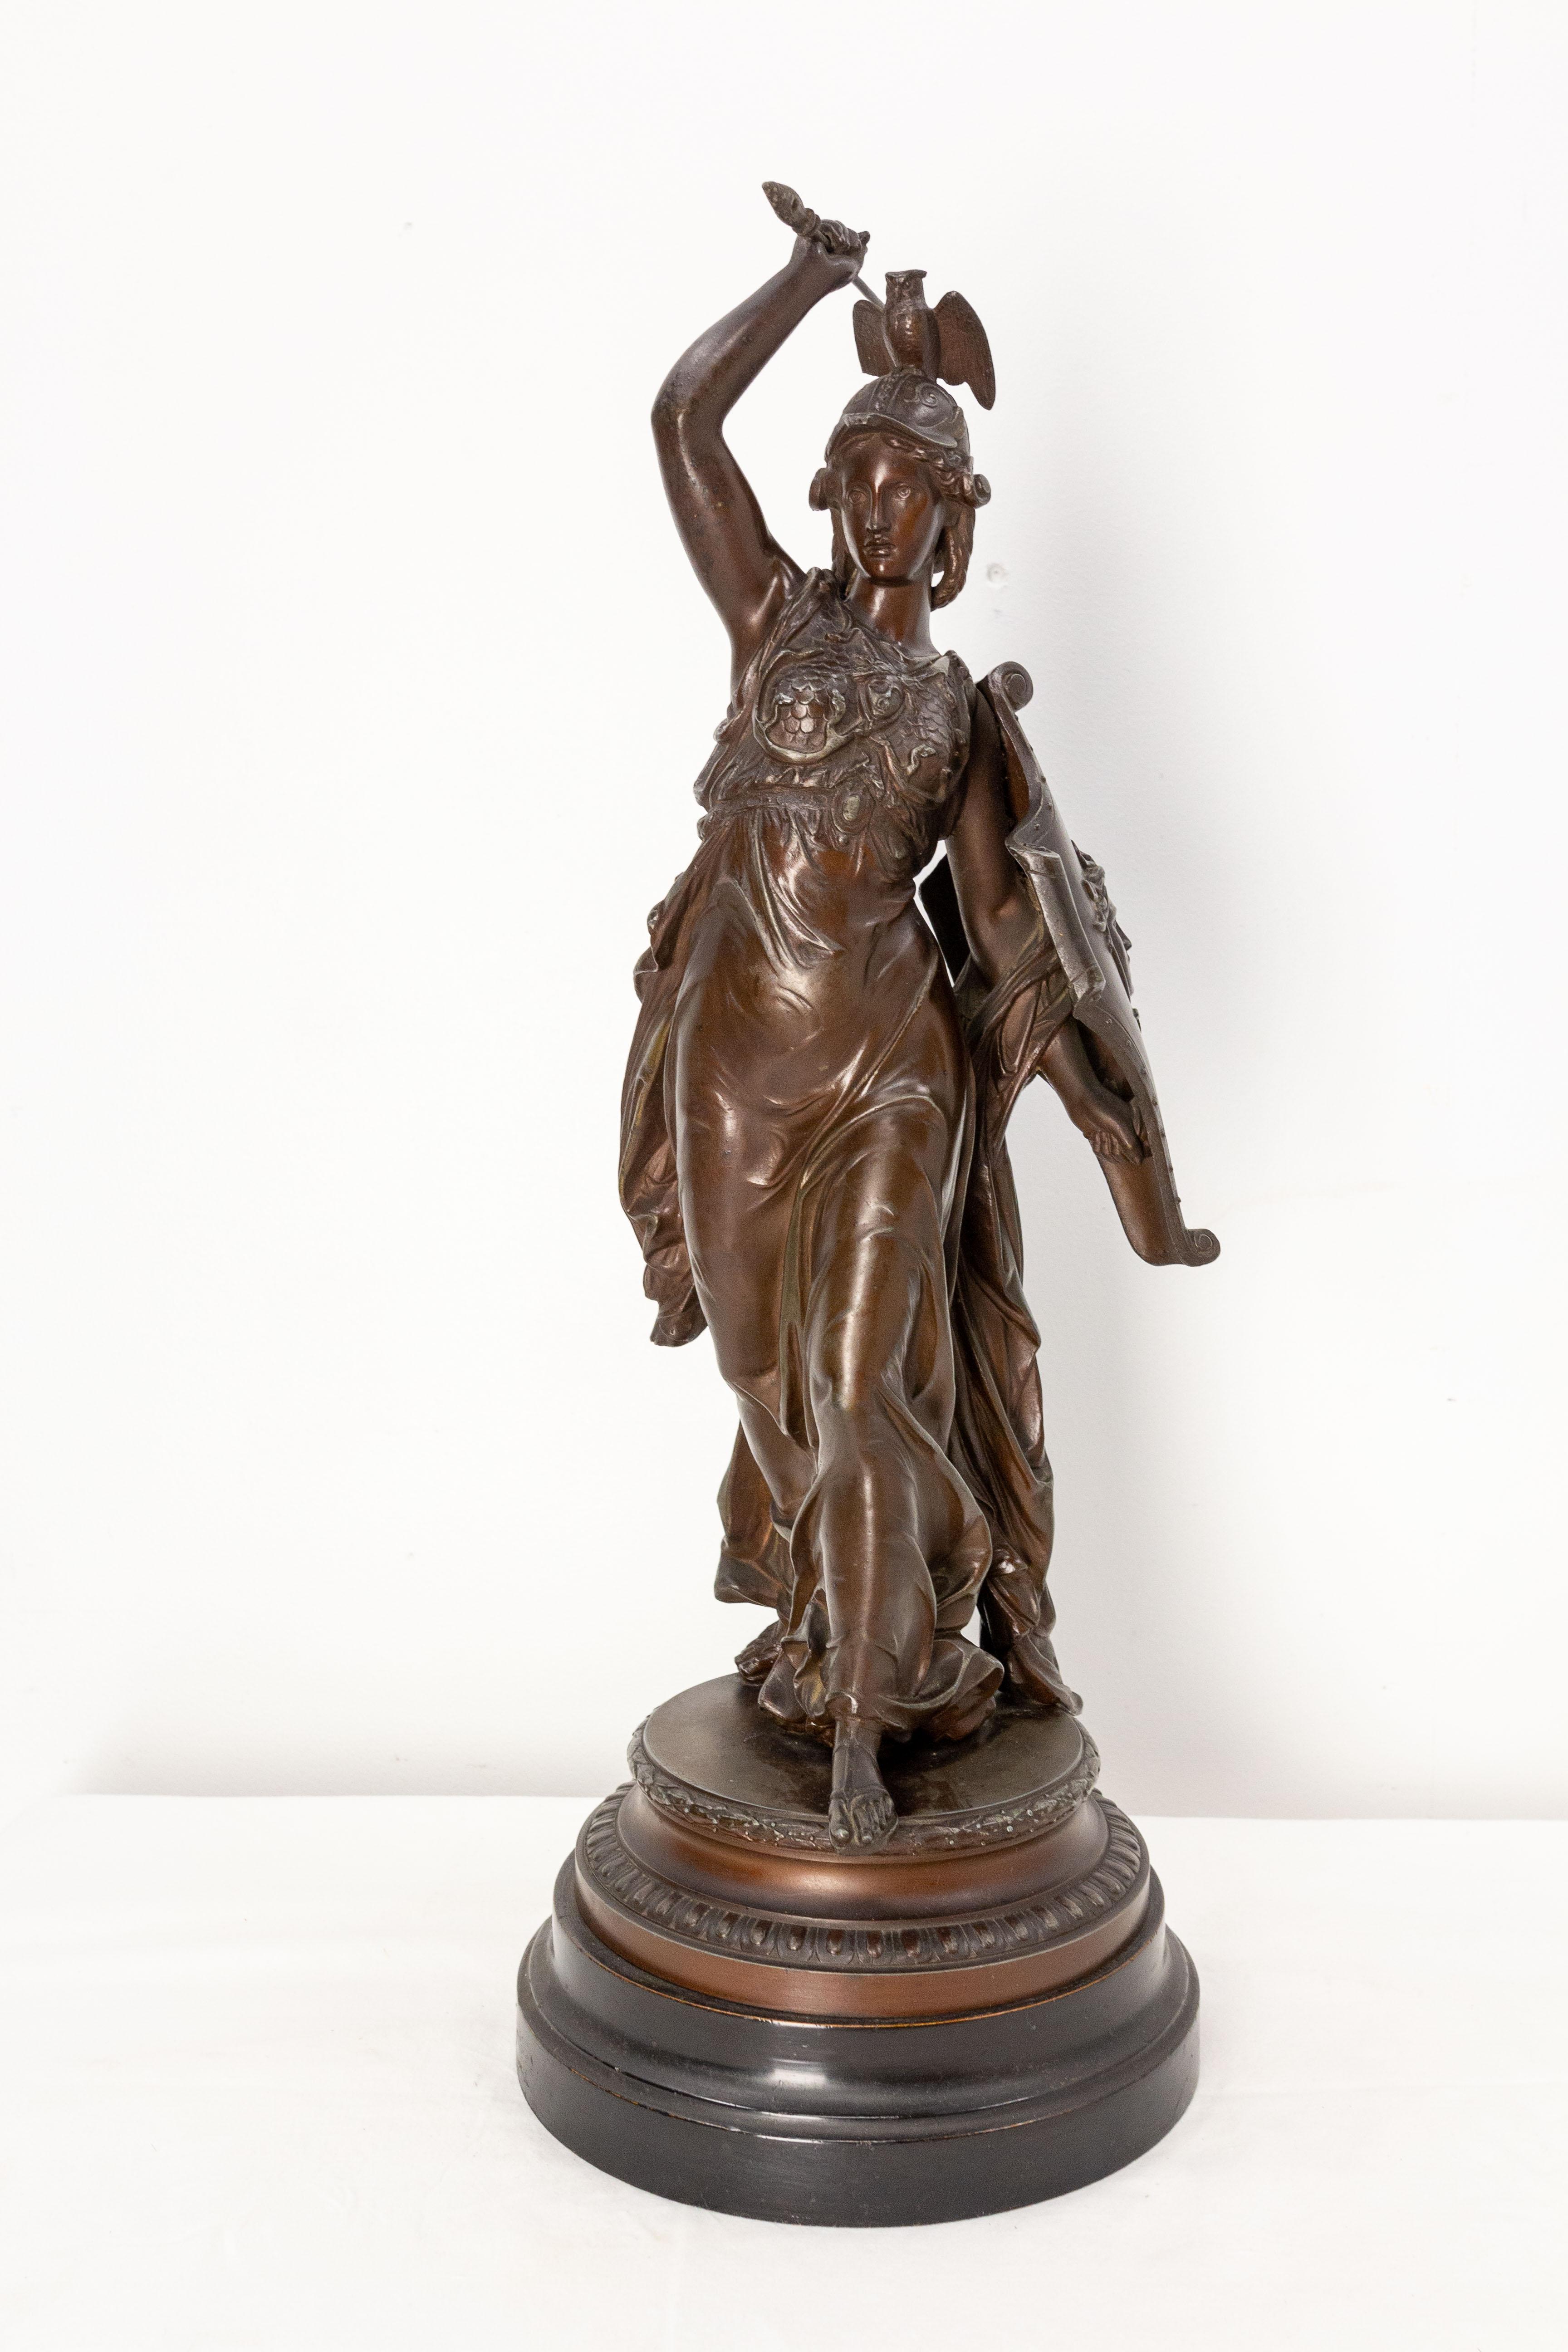 Französische Jugendstil-Statue der Athena aus Zinn.
Sehr schöne Behandlung des Themas in einem detaillierten und nervösen klassischen Stil mit einer hohen Qualität der Details. Sehr schönes Gesicht.
Hervorragende alte Patina. Auf dieser Statue